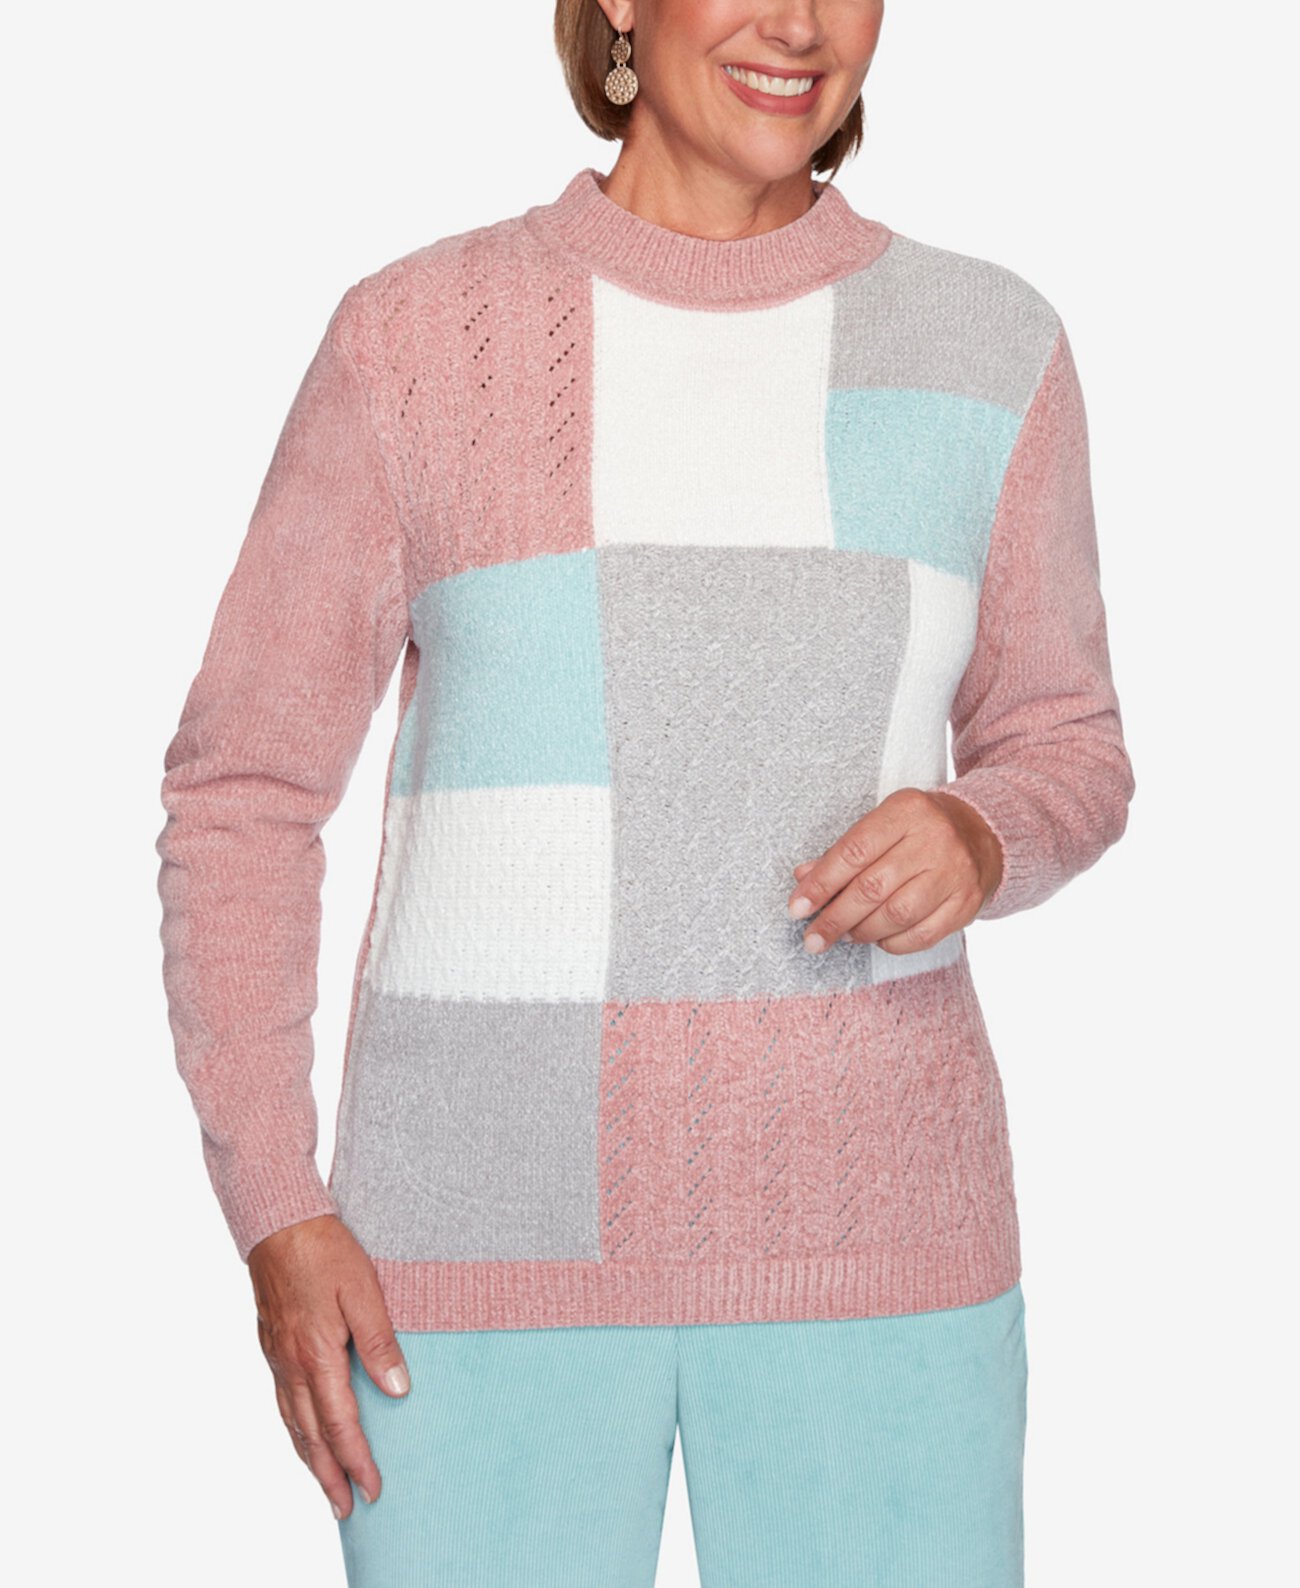 Женский свитер больших размеров St. Moritz из синели с цветными блоками Alfred Dunner